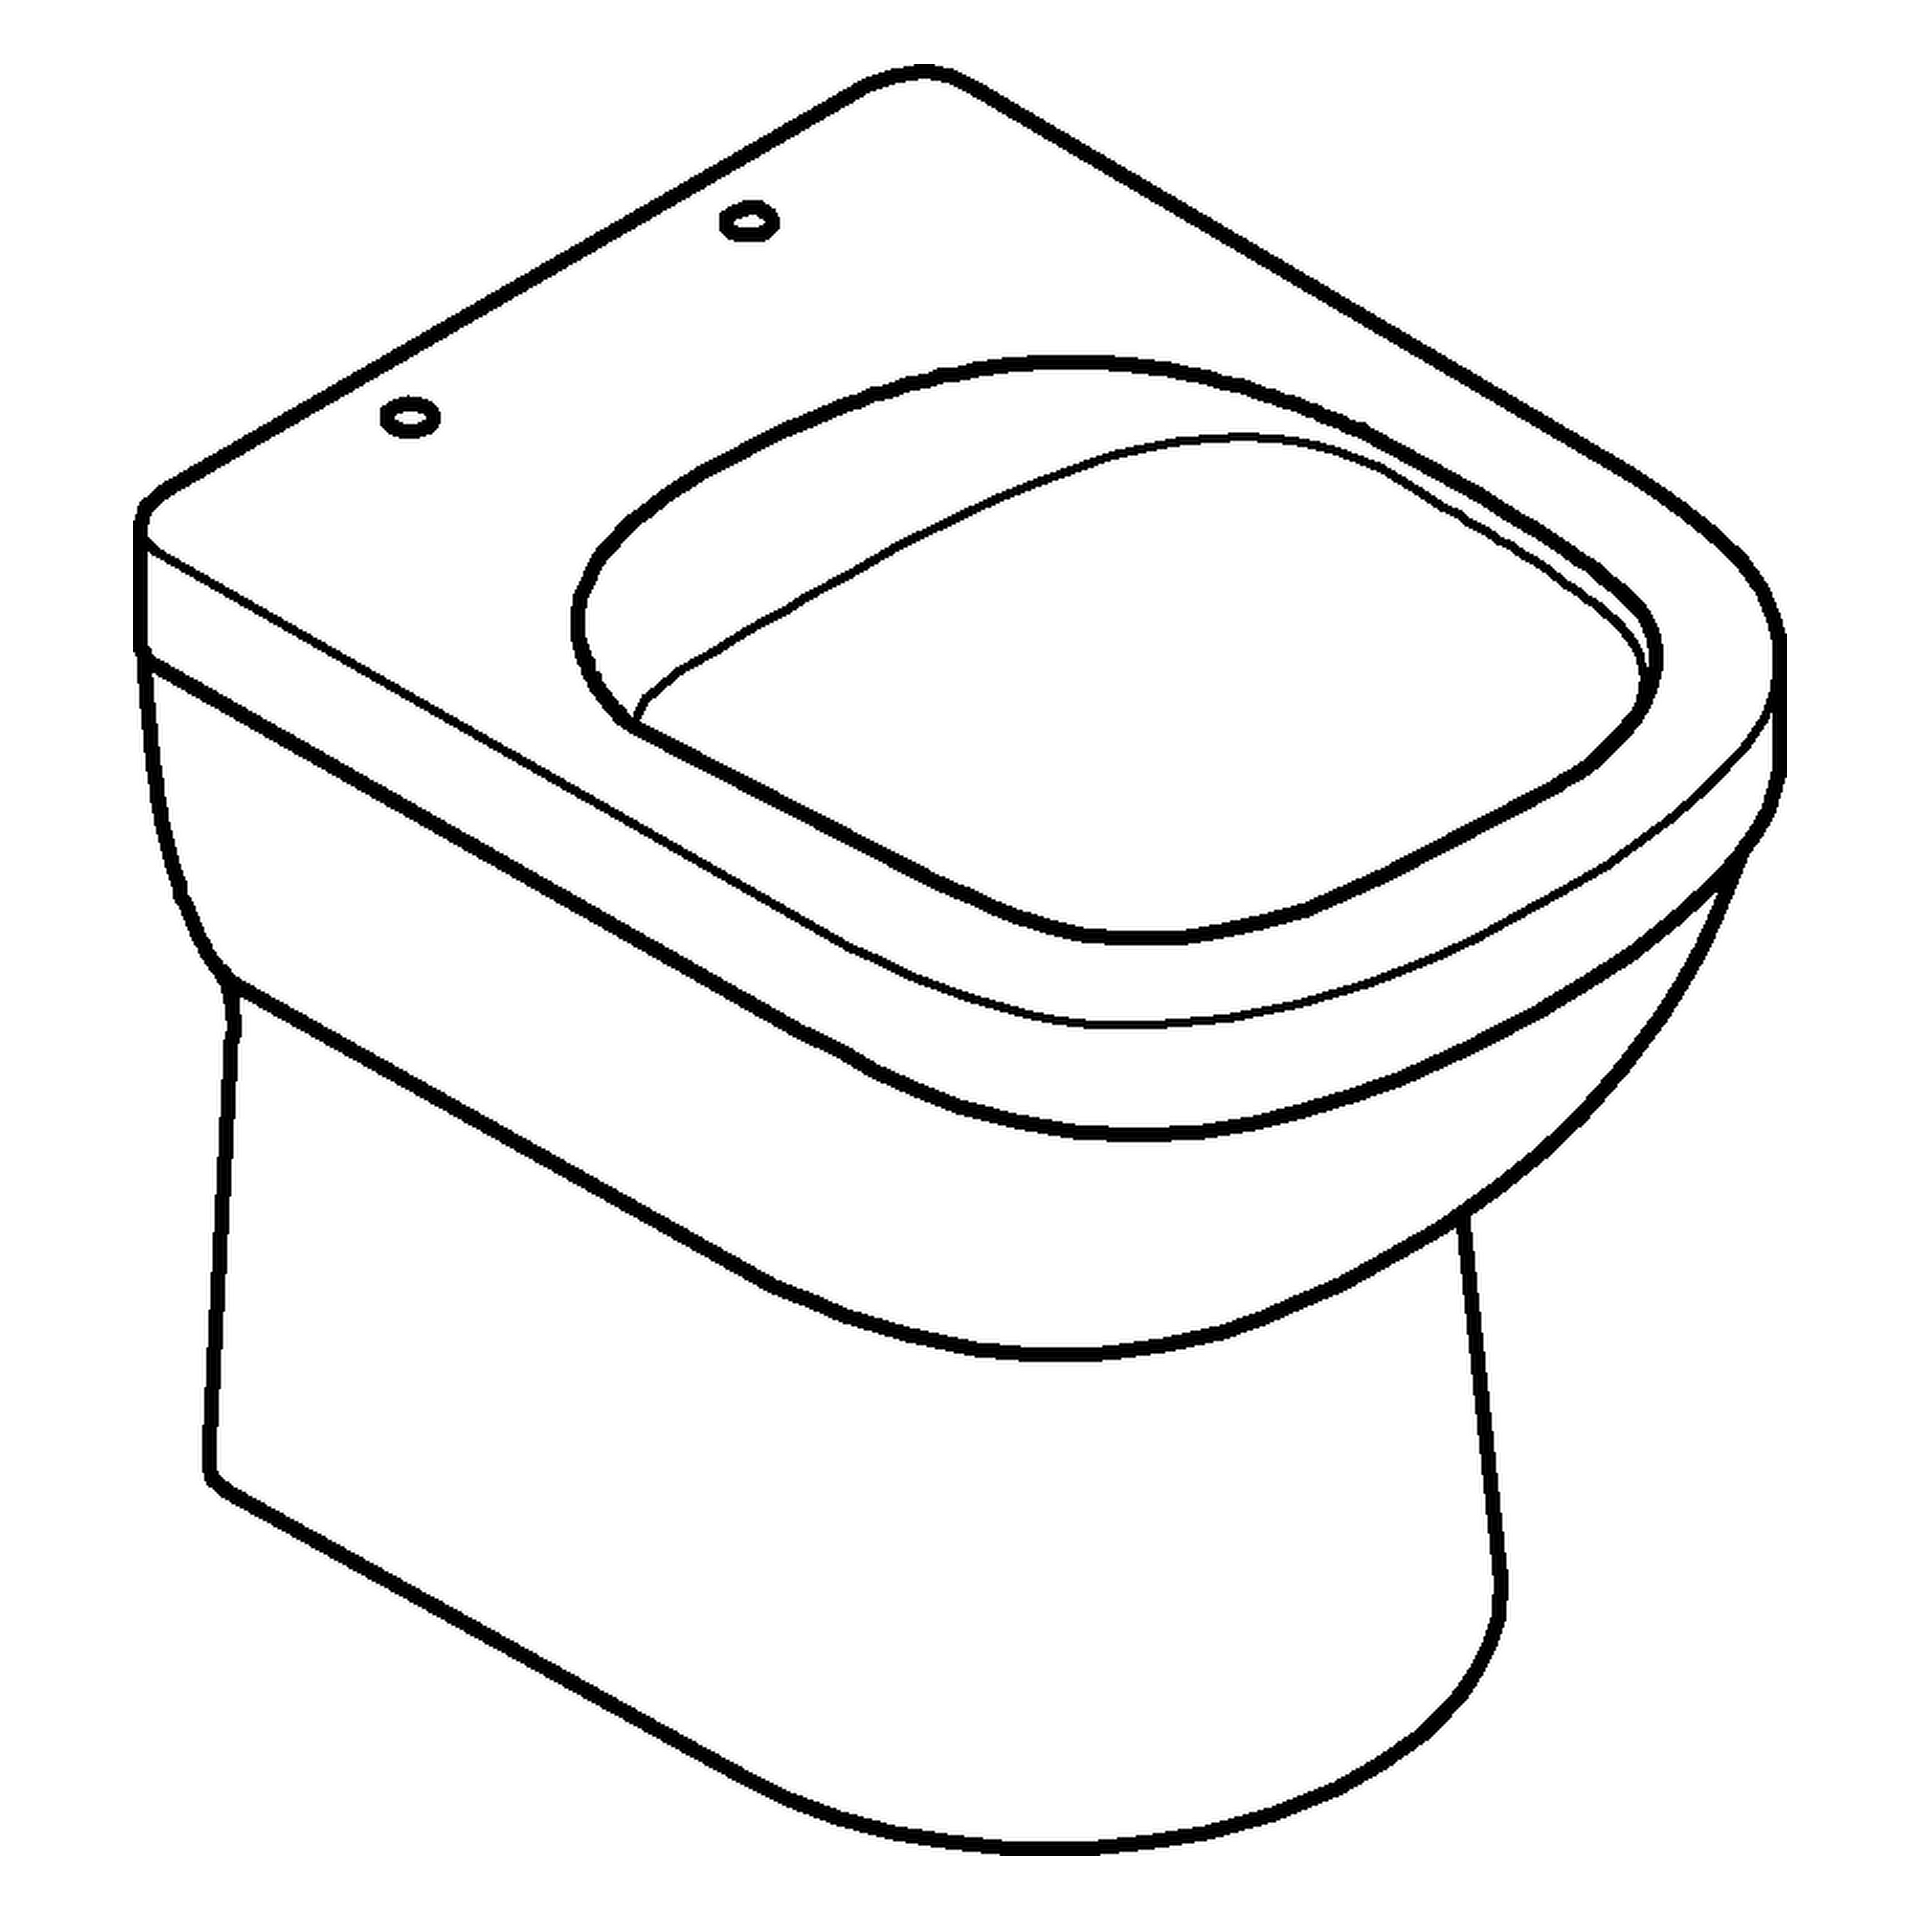 GROHE Stand-Tiefspül-WC Euro Keramik 39329, Abgang universal, spülrandlos, aus Sanitärkeramik, alpinweiß